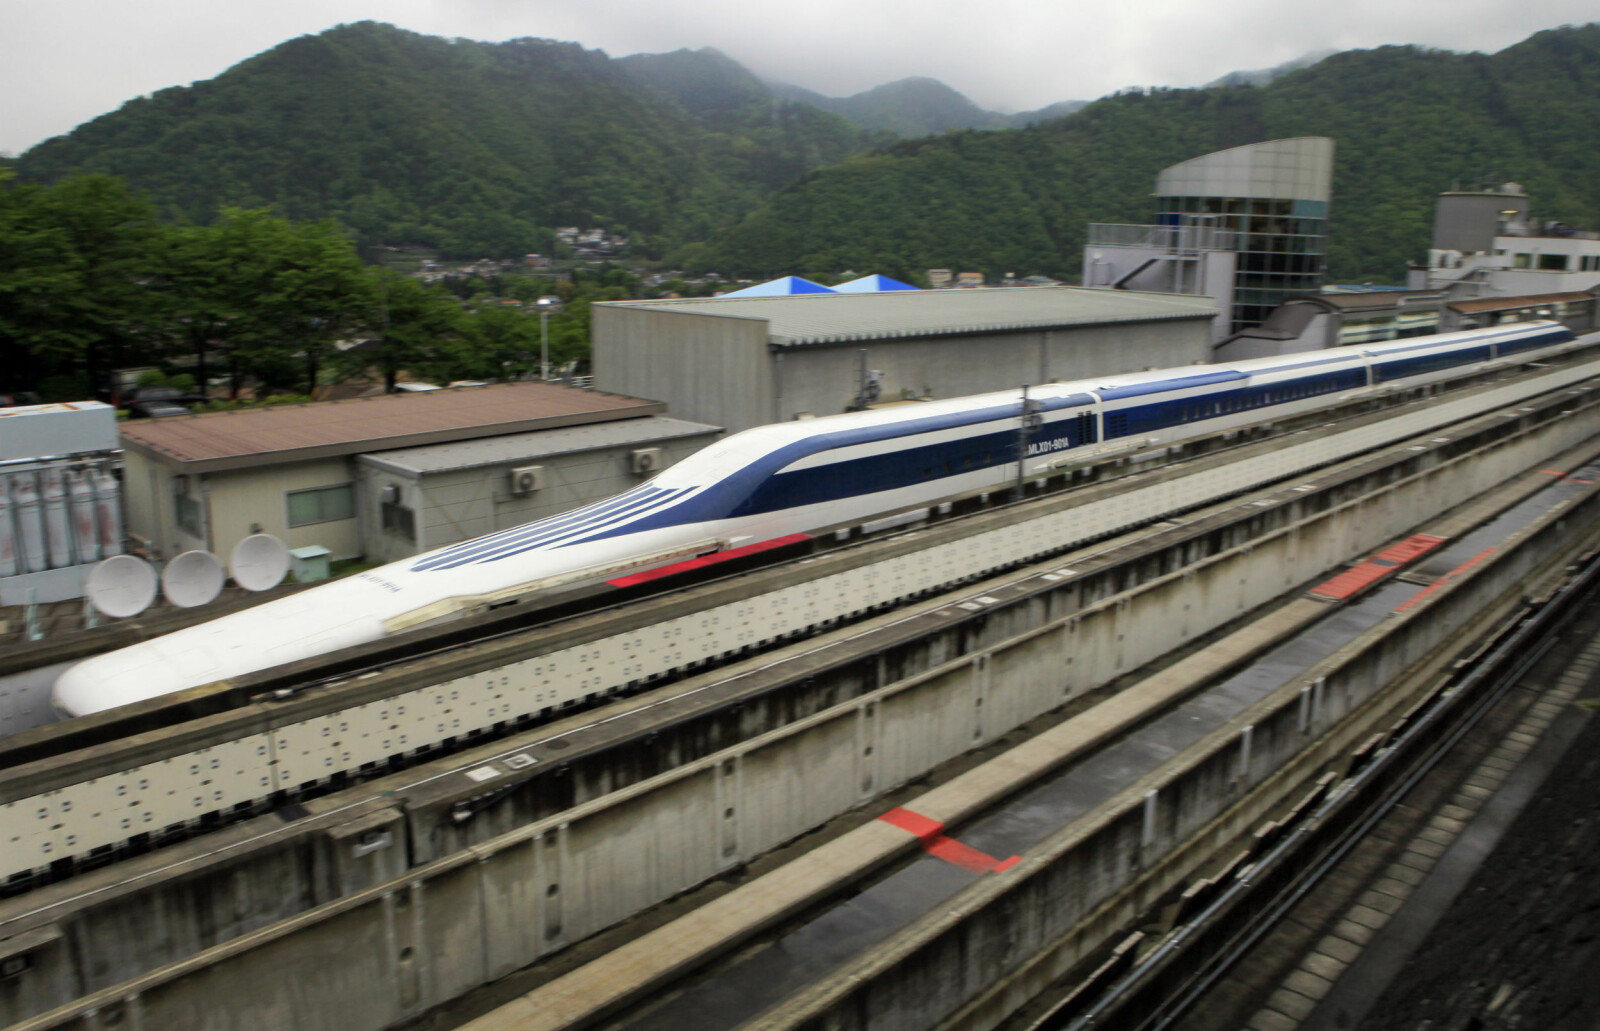 <b>MAGLEV-REKORD:</b> Rekorden for maglev-tog ble satt i Japan i 2015 med en hastighet på 603 km/t på en teststrekning. SCMaglev-toget er utviklet av Central Japan Railway Company.